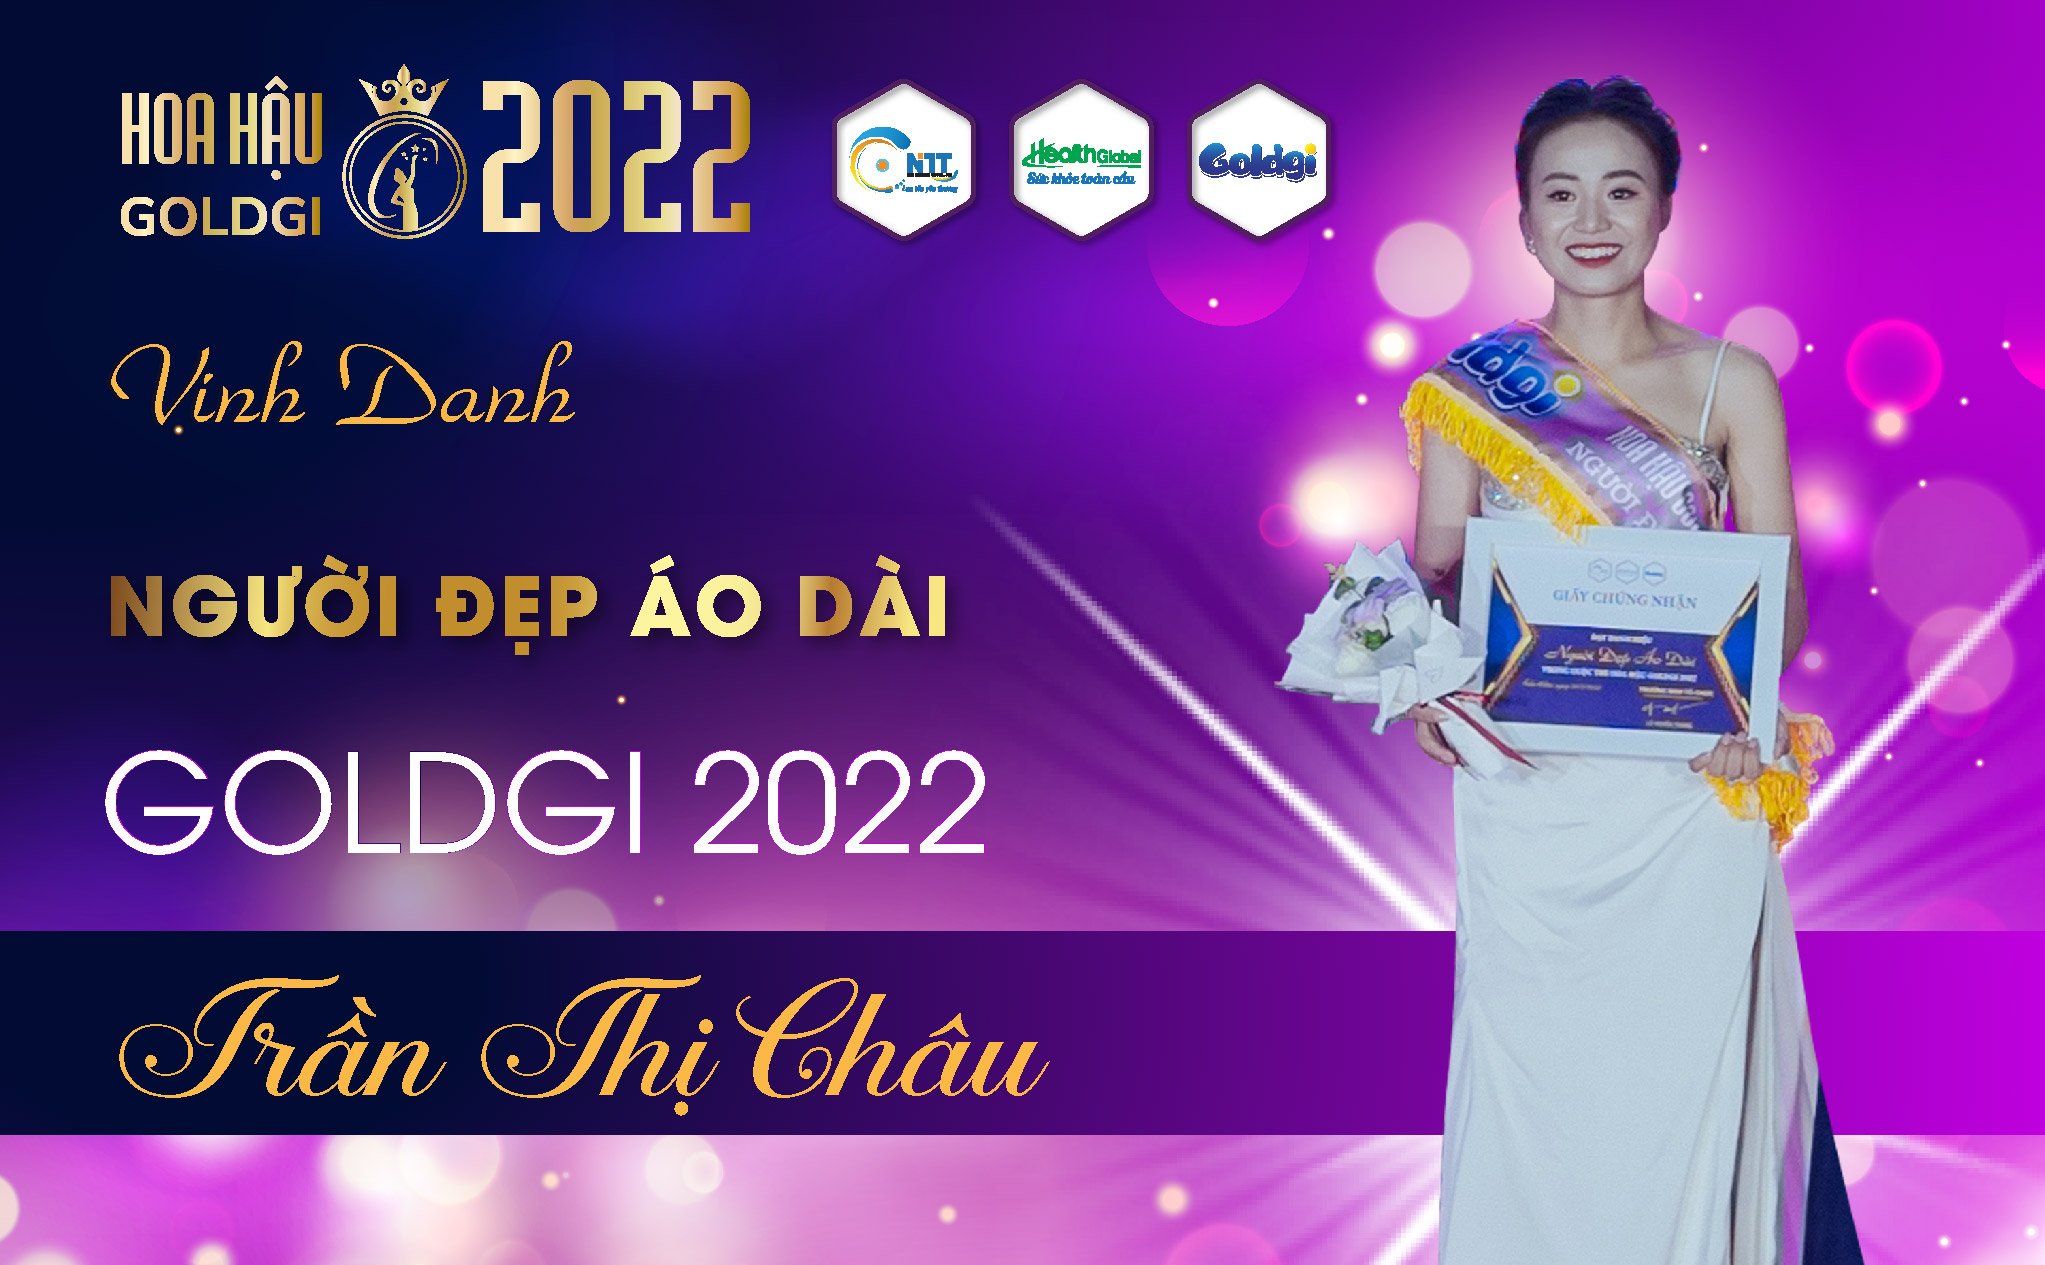 Chủ nhân giải thưởng người đẹp áo dài trong cuộc thi Hoa hậu Goldgi 2022 là ai